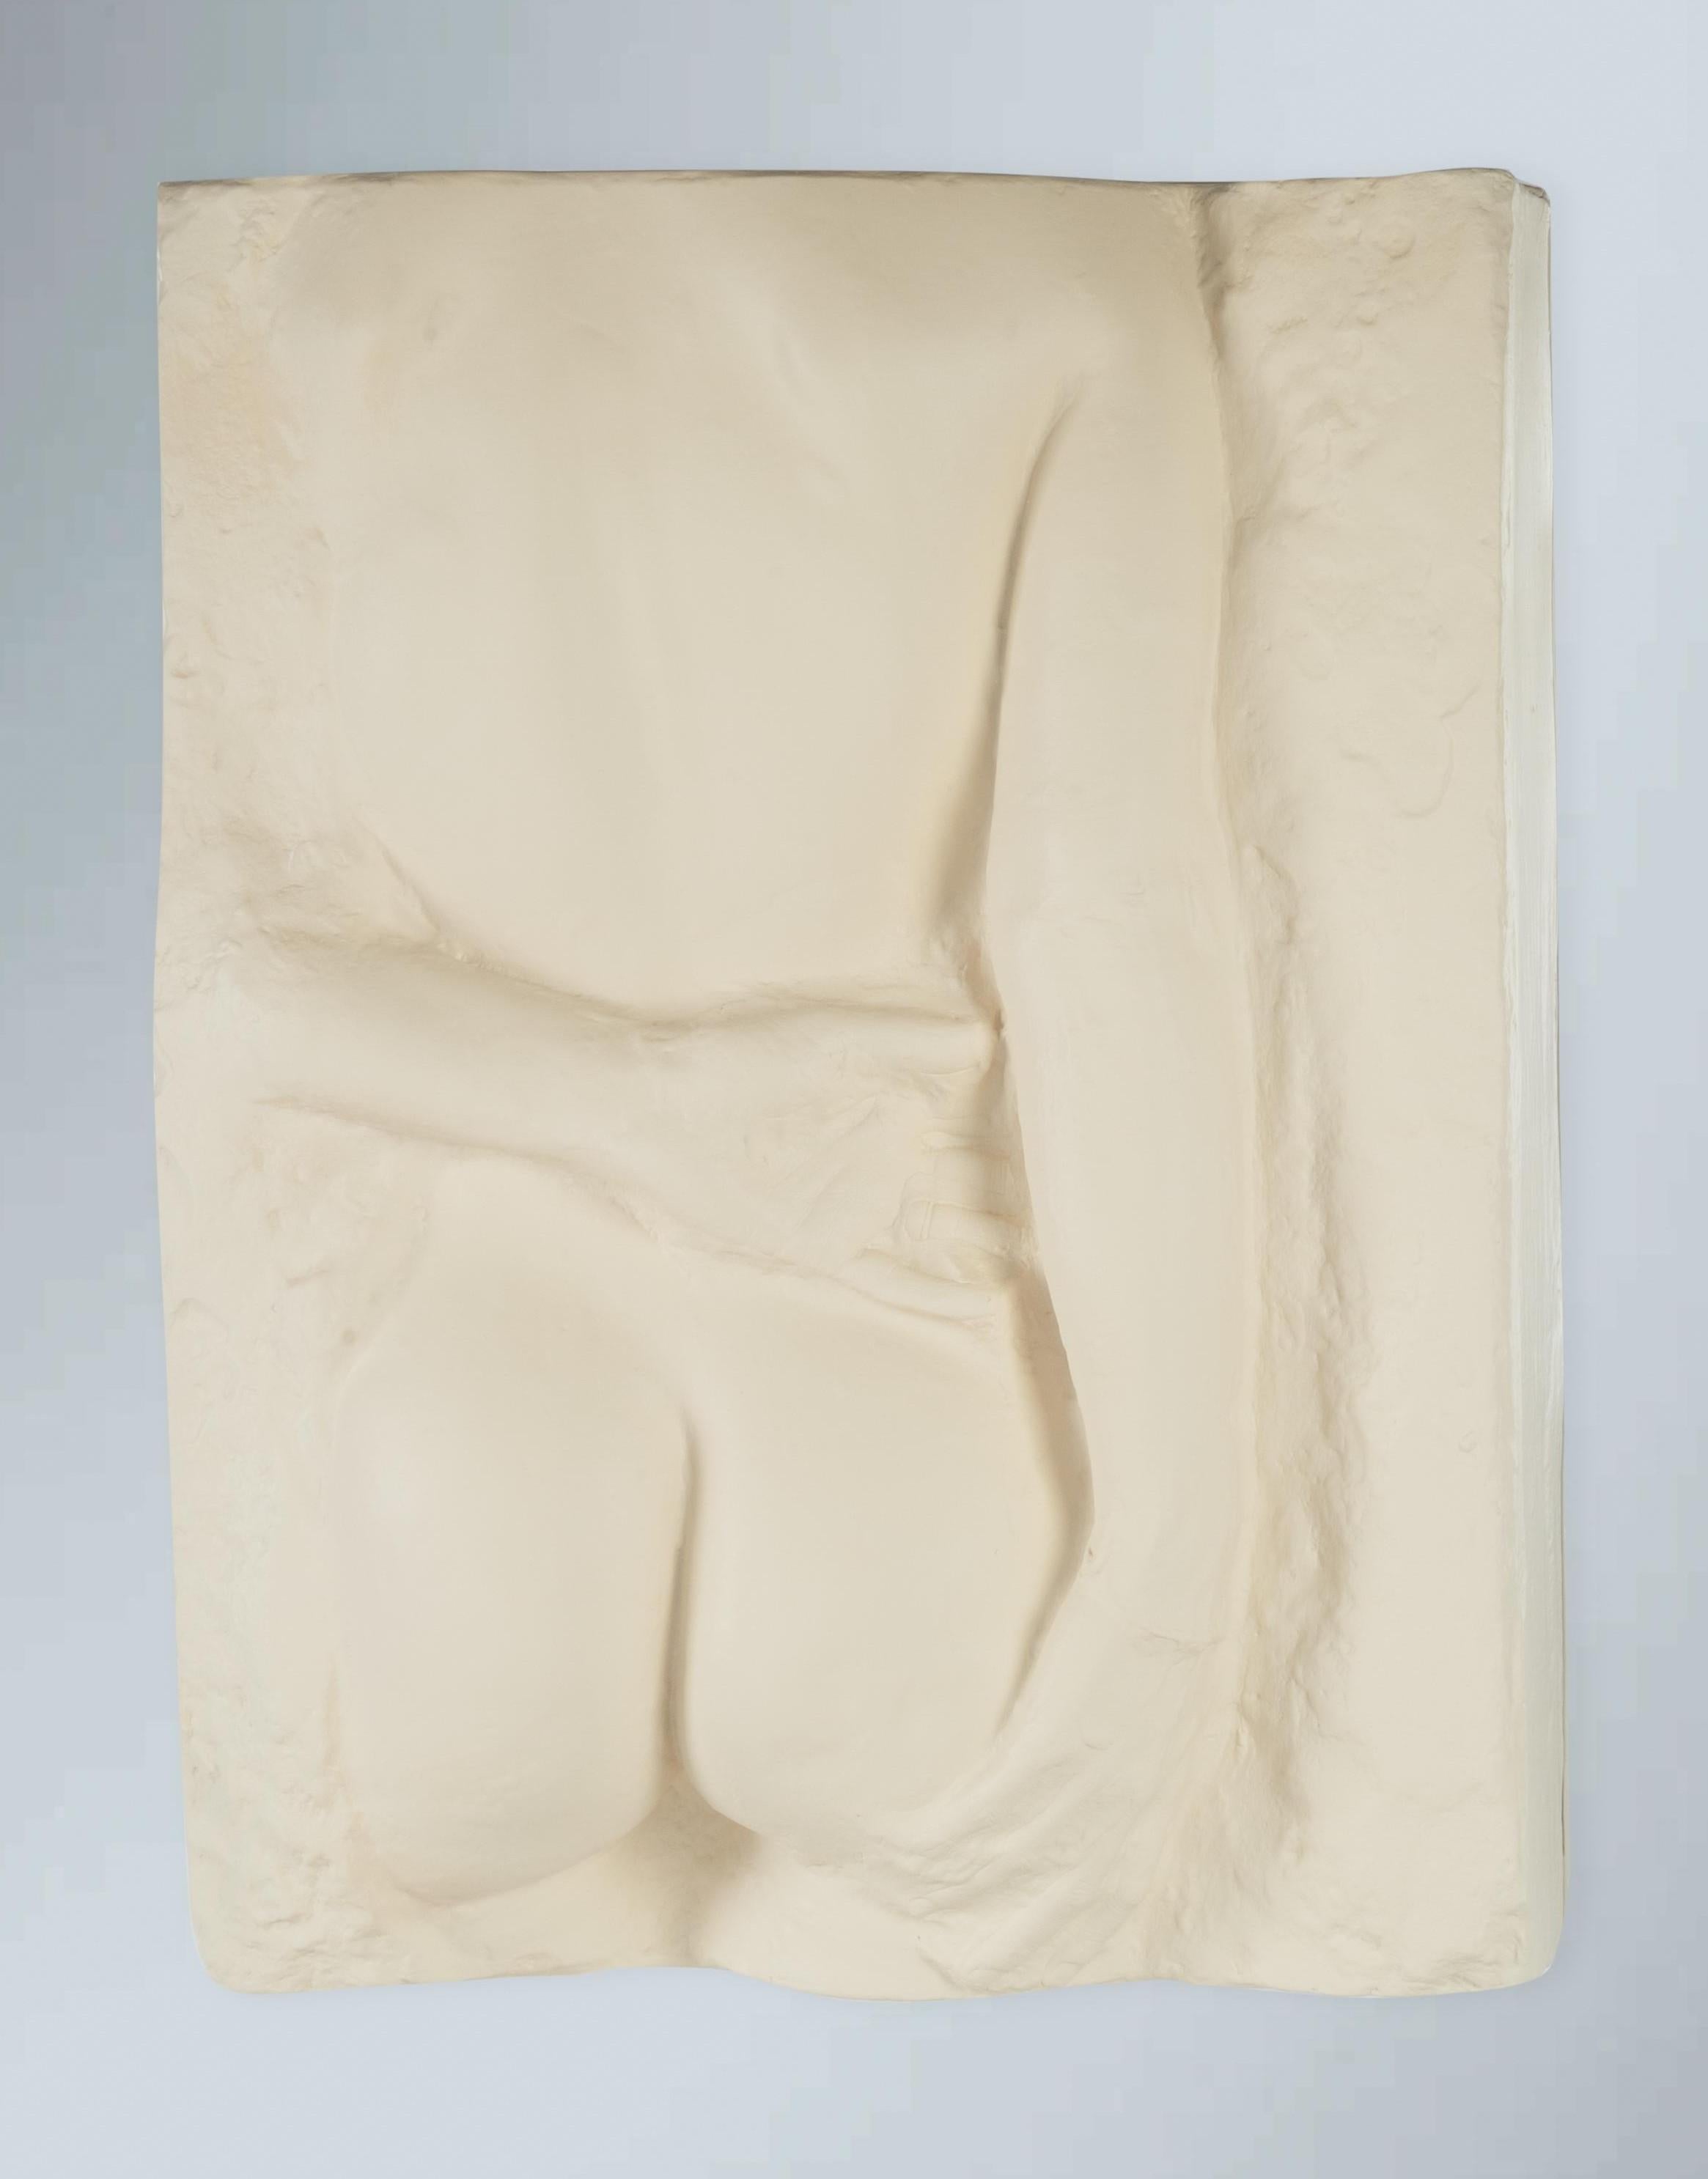 George Segal Nude Sculpture – Schauende Frau